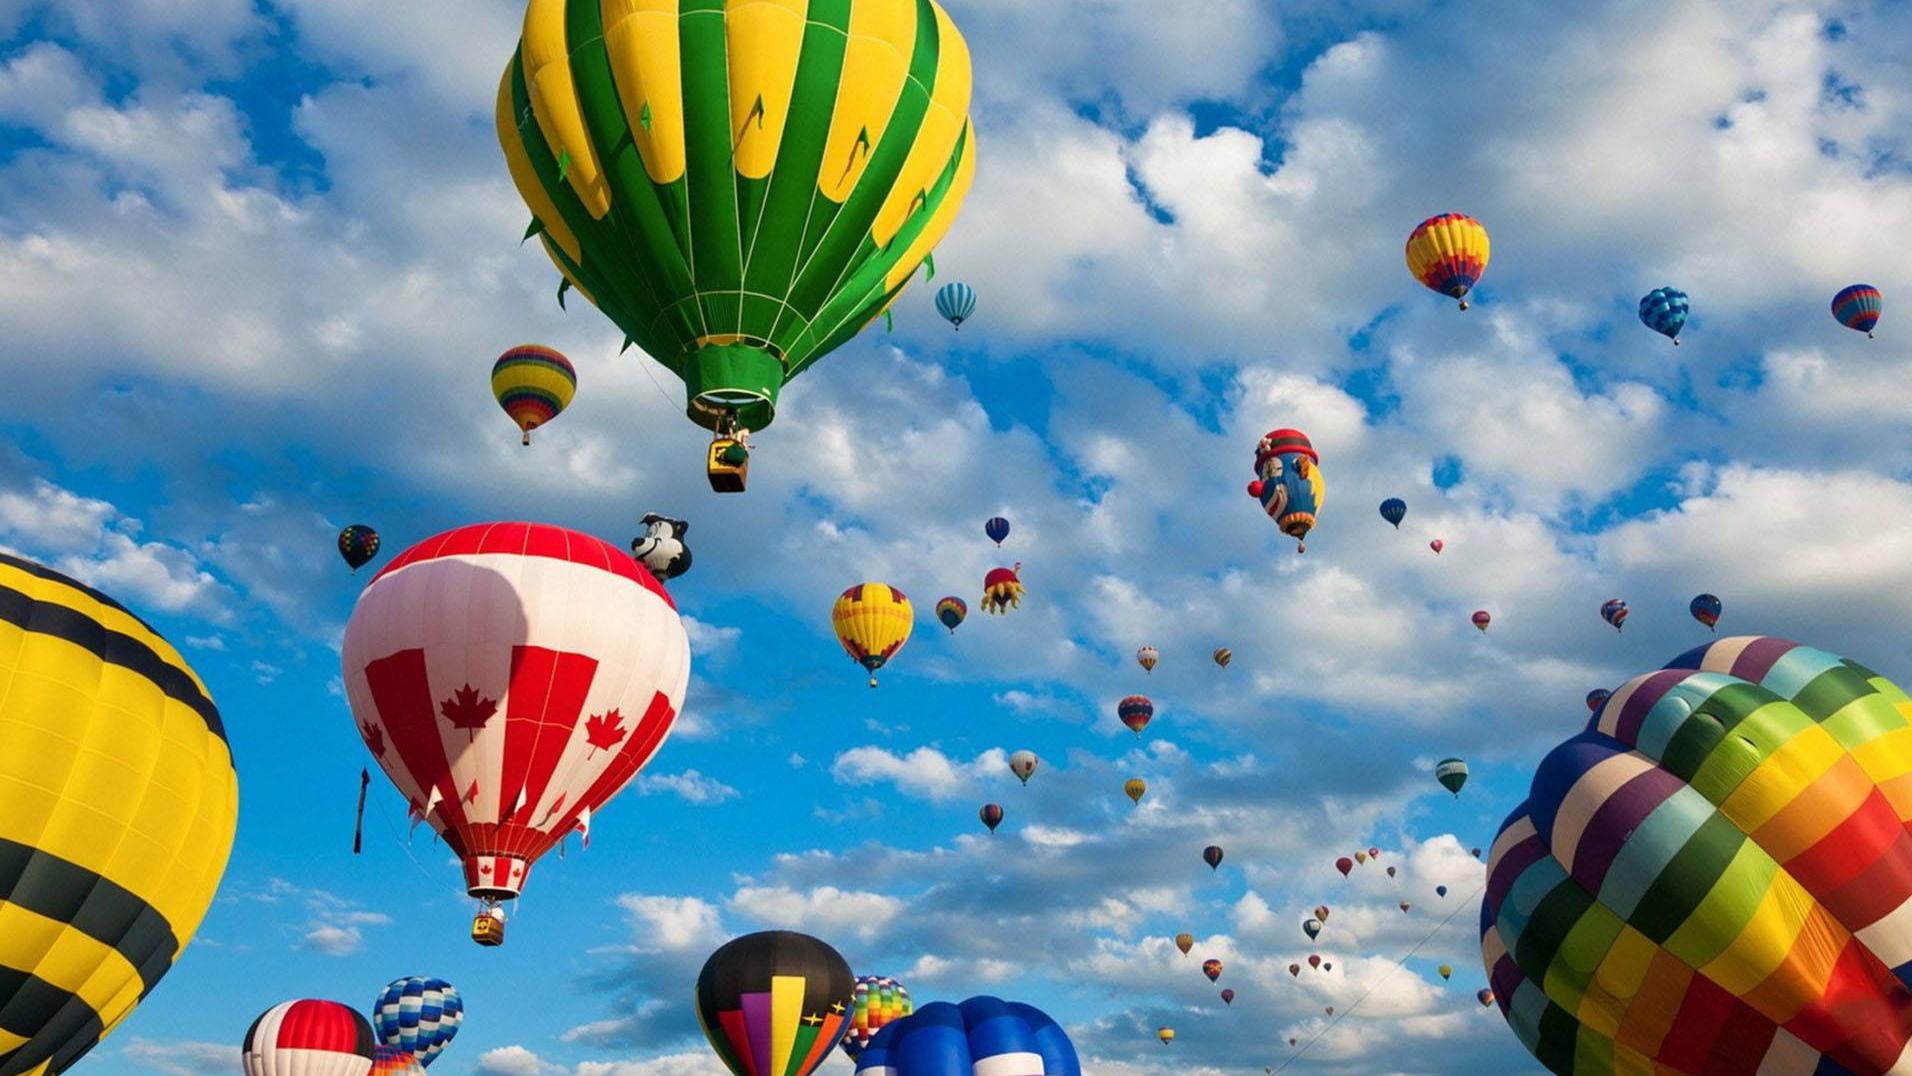 Da Nang Hot Air Balloon Festival 2022 - Da Nang Leisure